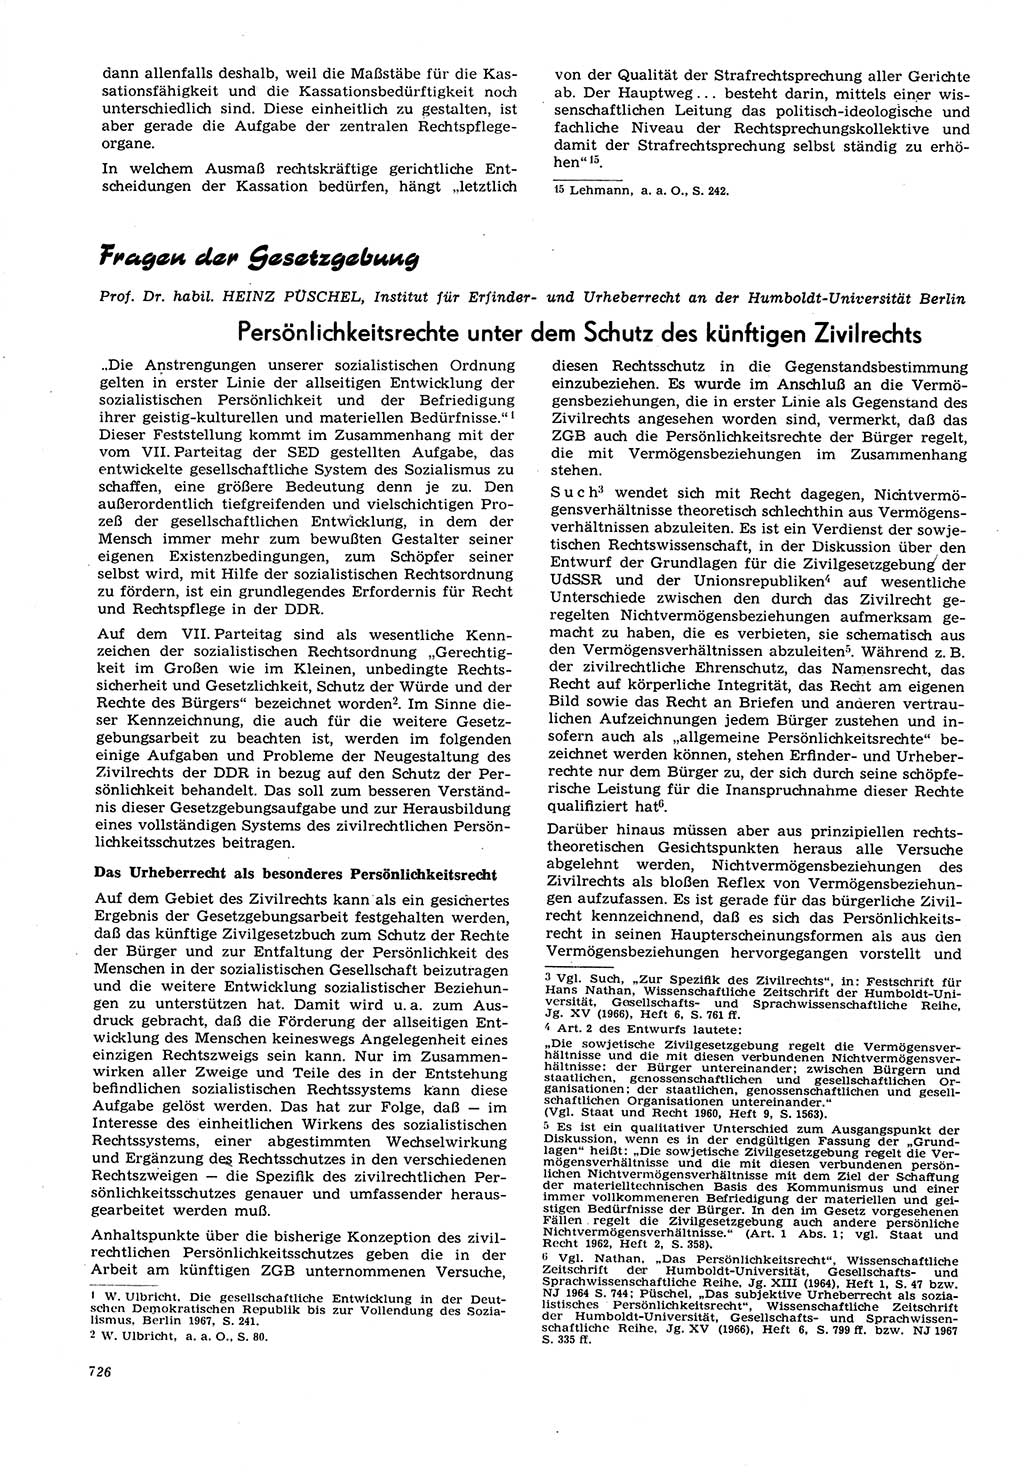 Neue Justiz (NJ), Zeitschrift für Recht und Rechtswissenschaft [Deutsche Demokratische Republik (DDR)], 21. Jahrgang 1967, Seite 726 (NJ DDR 1967, S. 726)